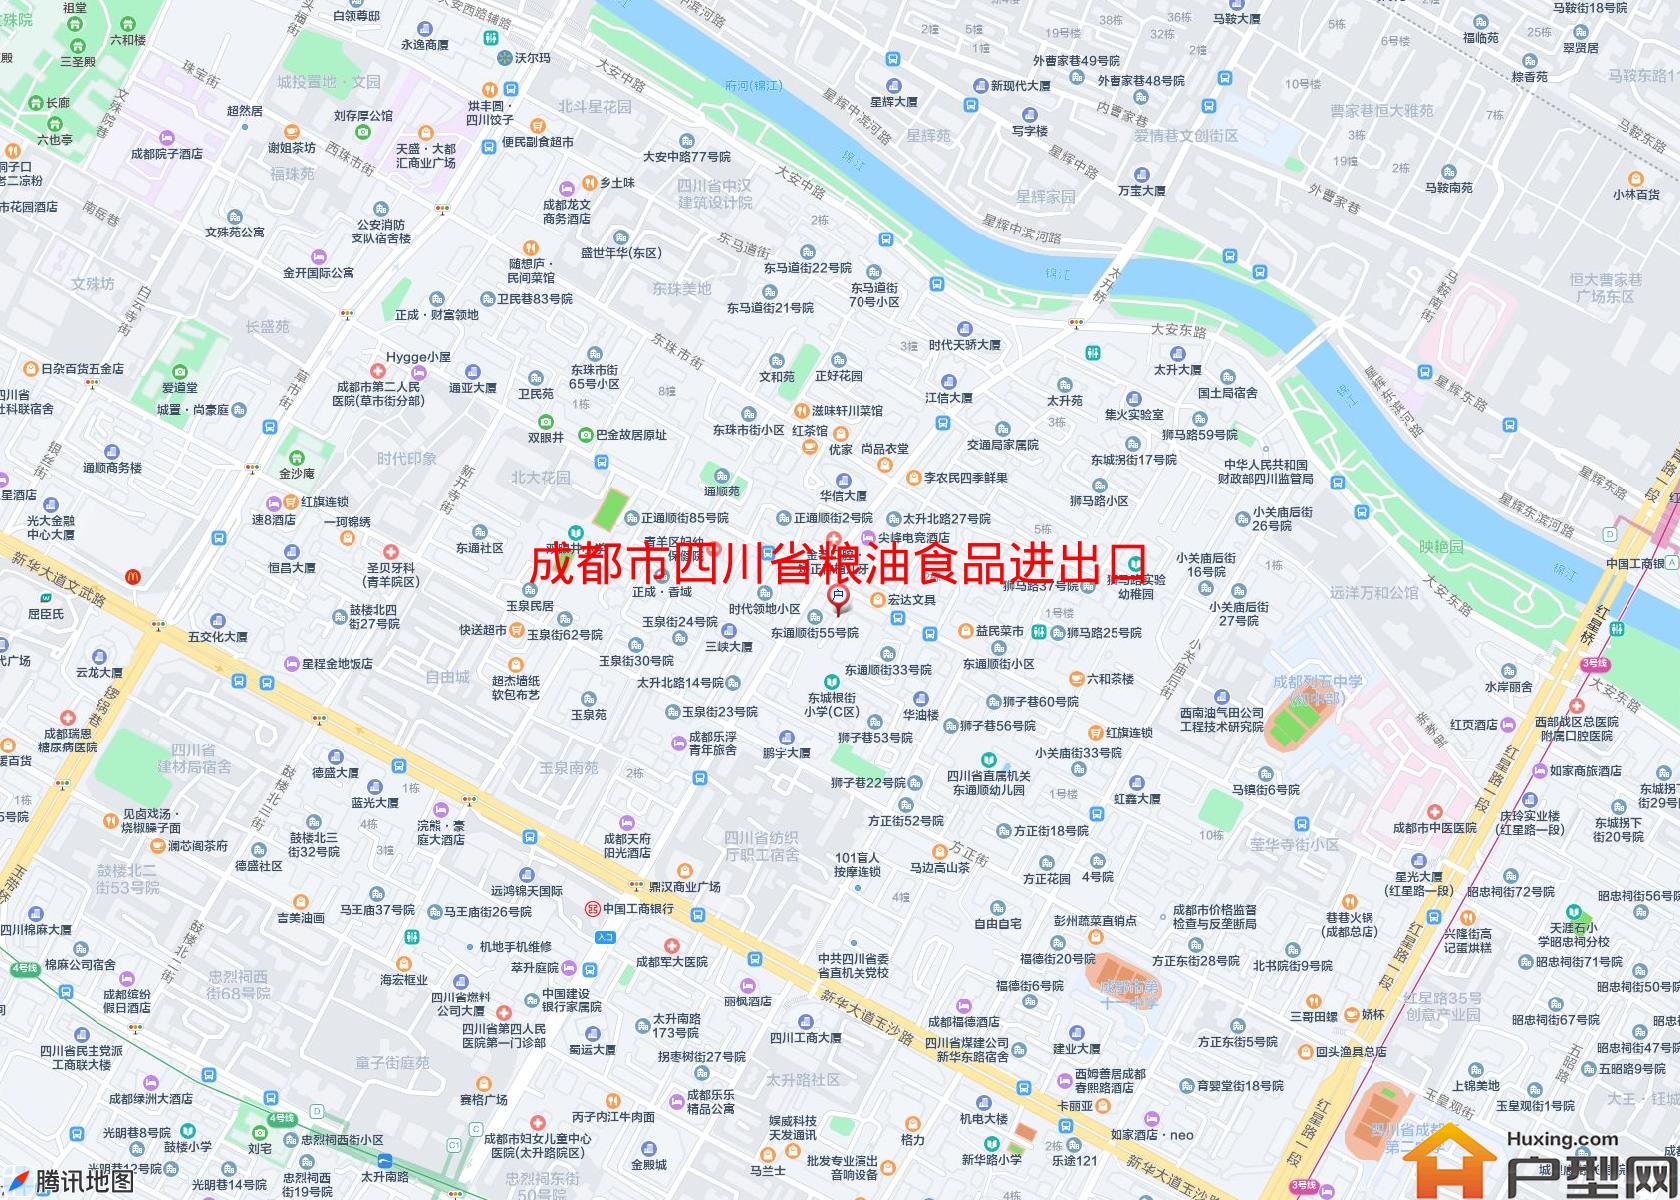 四川省粮油食品进出口公司宿舍小区 - 户型网